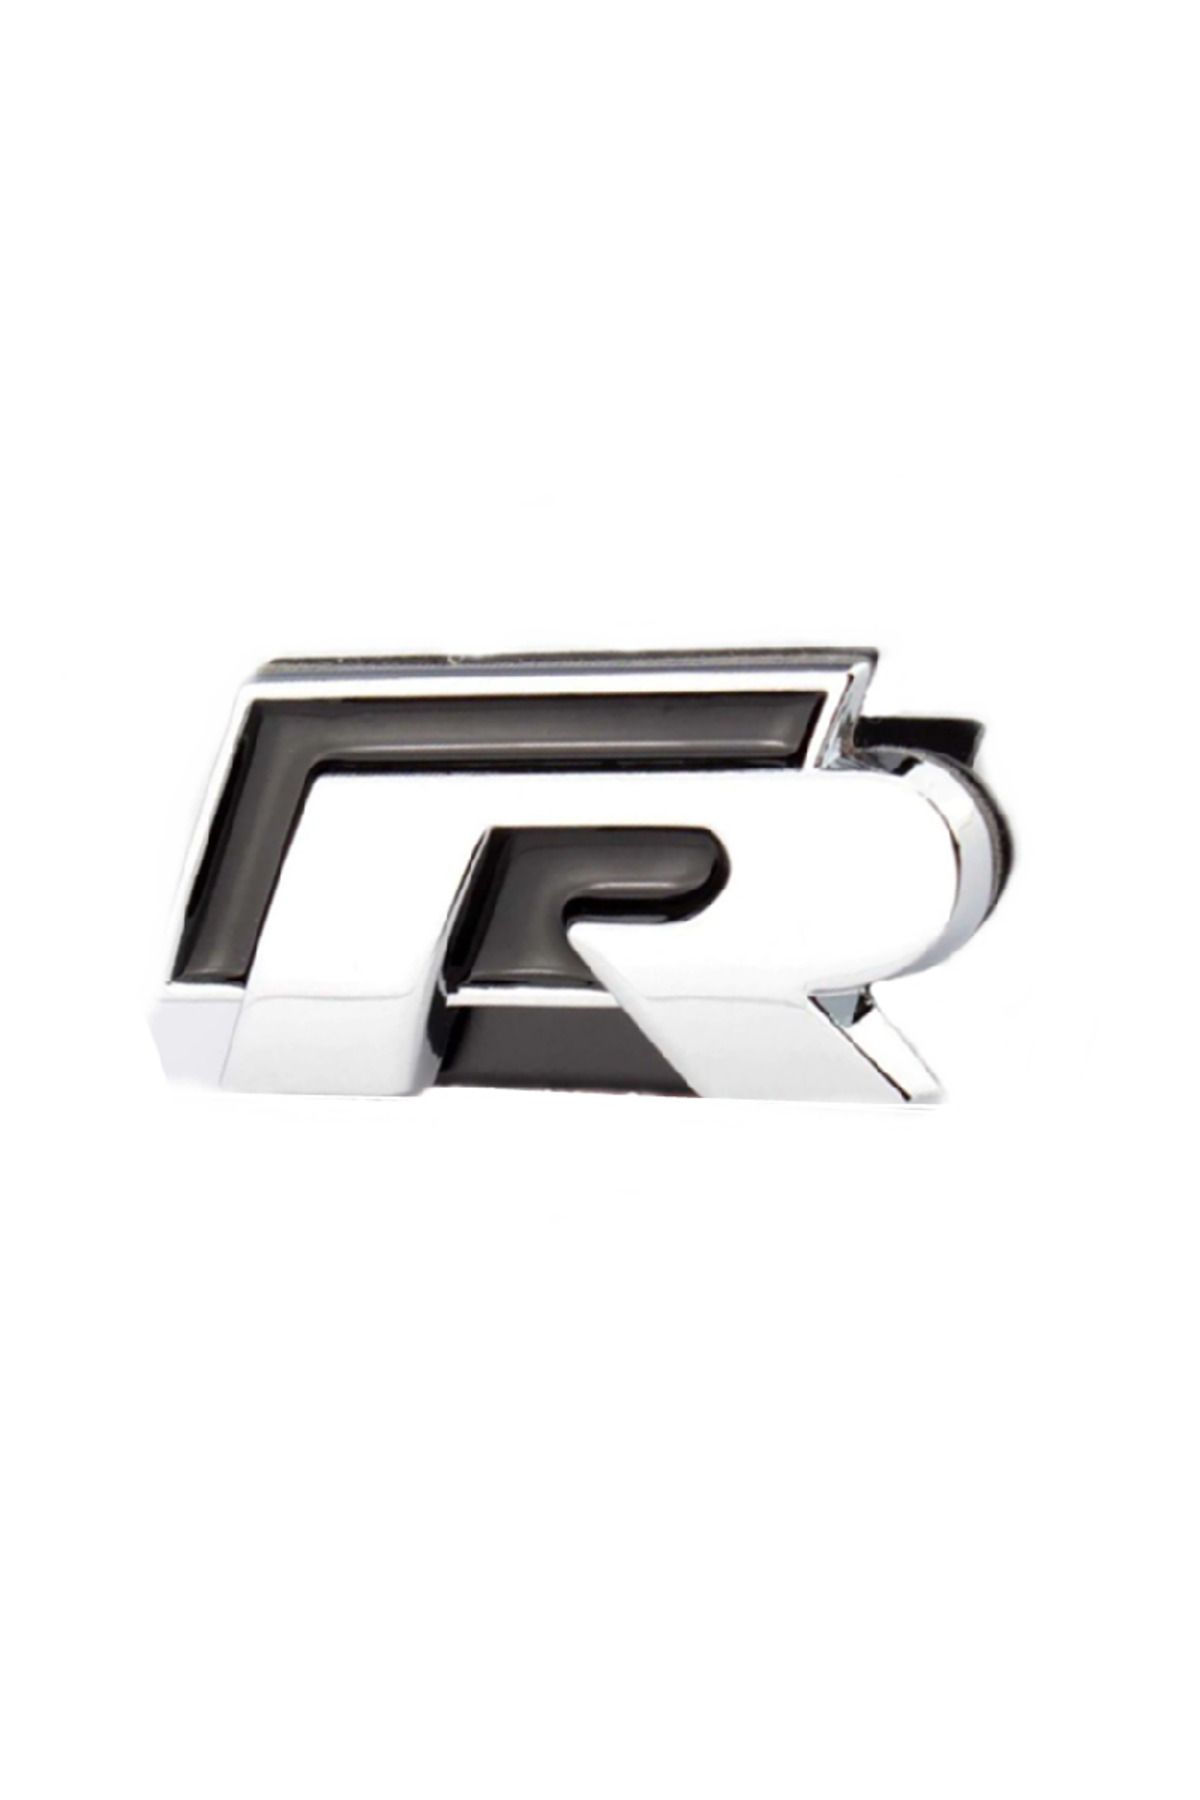 Space Volkswagen R Ön Çamurluk Logosu Yapıştırmalı / Yacı159